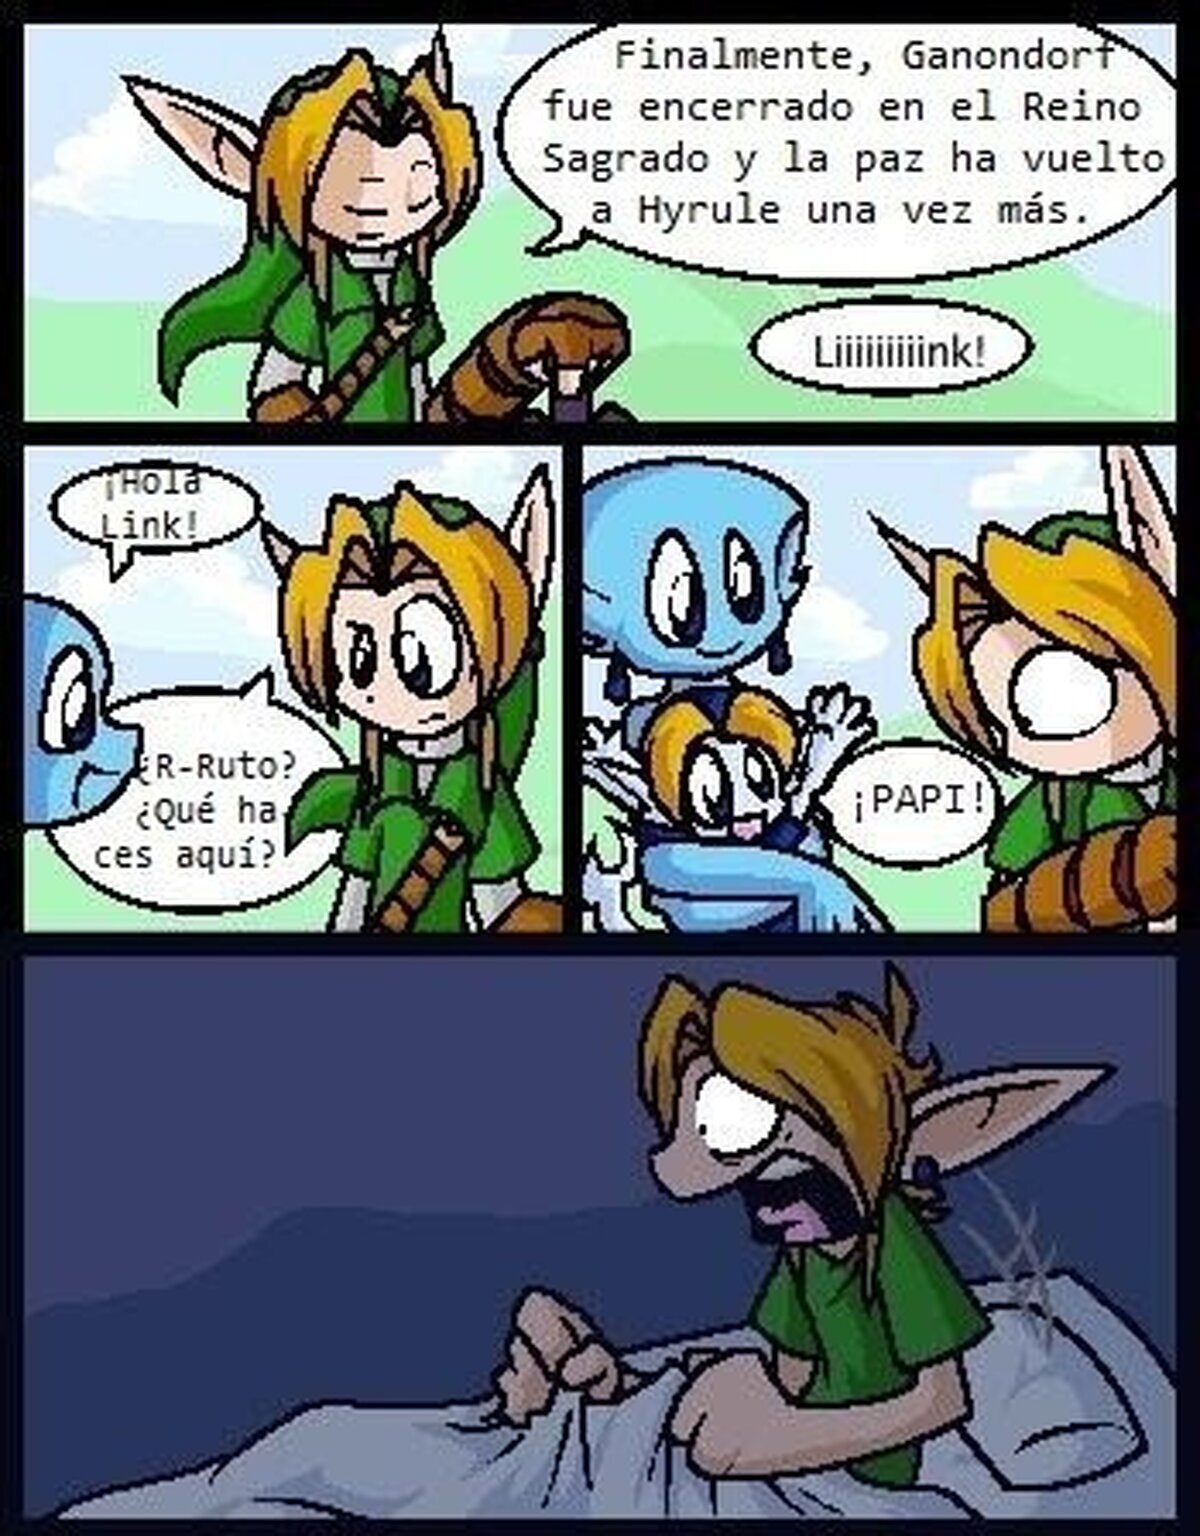 La peor pesadilla de Link